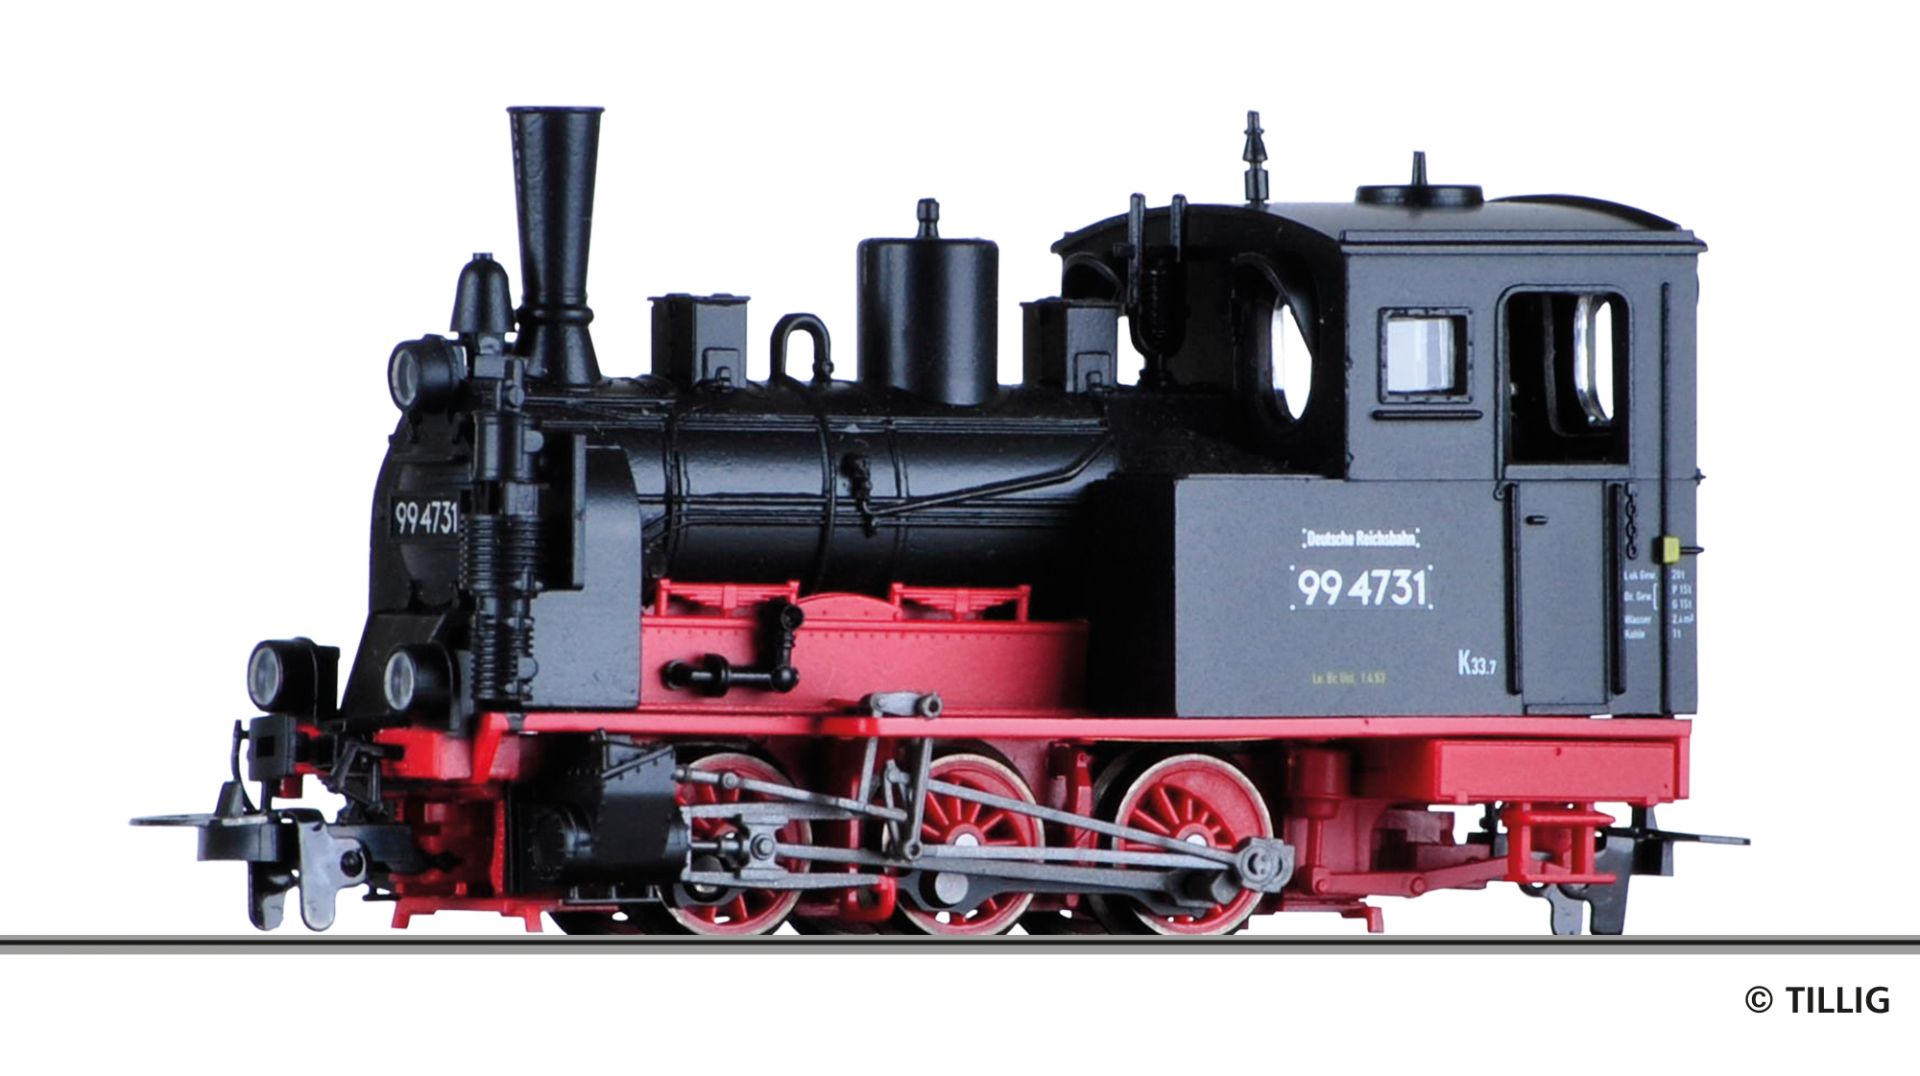 02993 | Dampflokomotive DR -werksseitig ausverkauft-